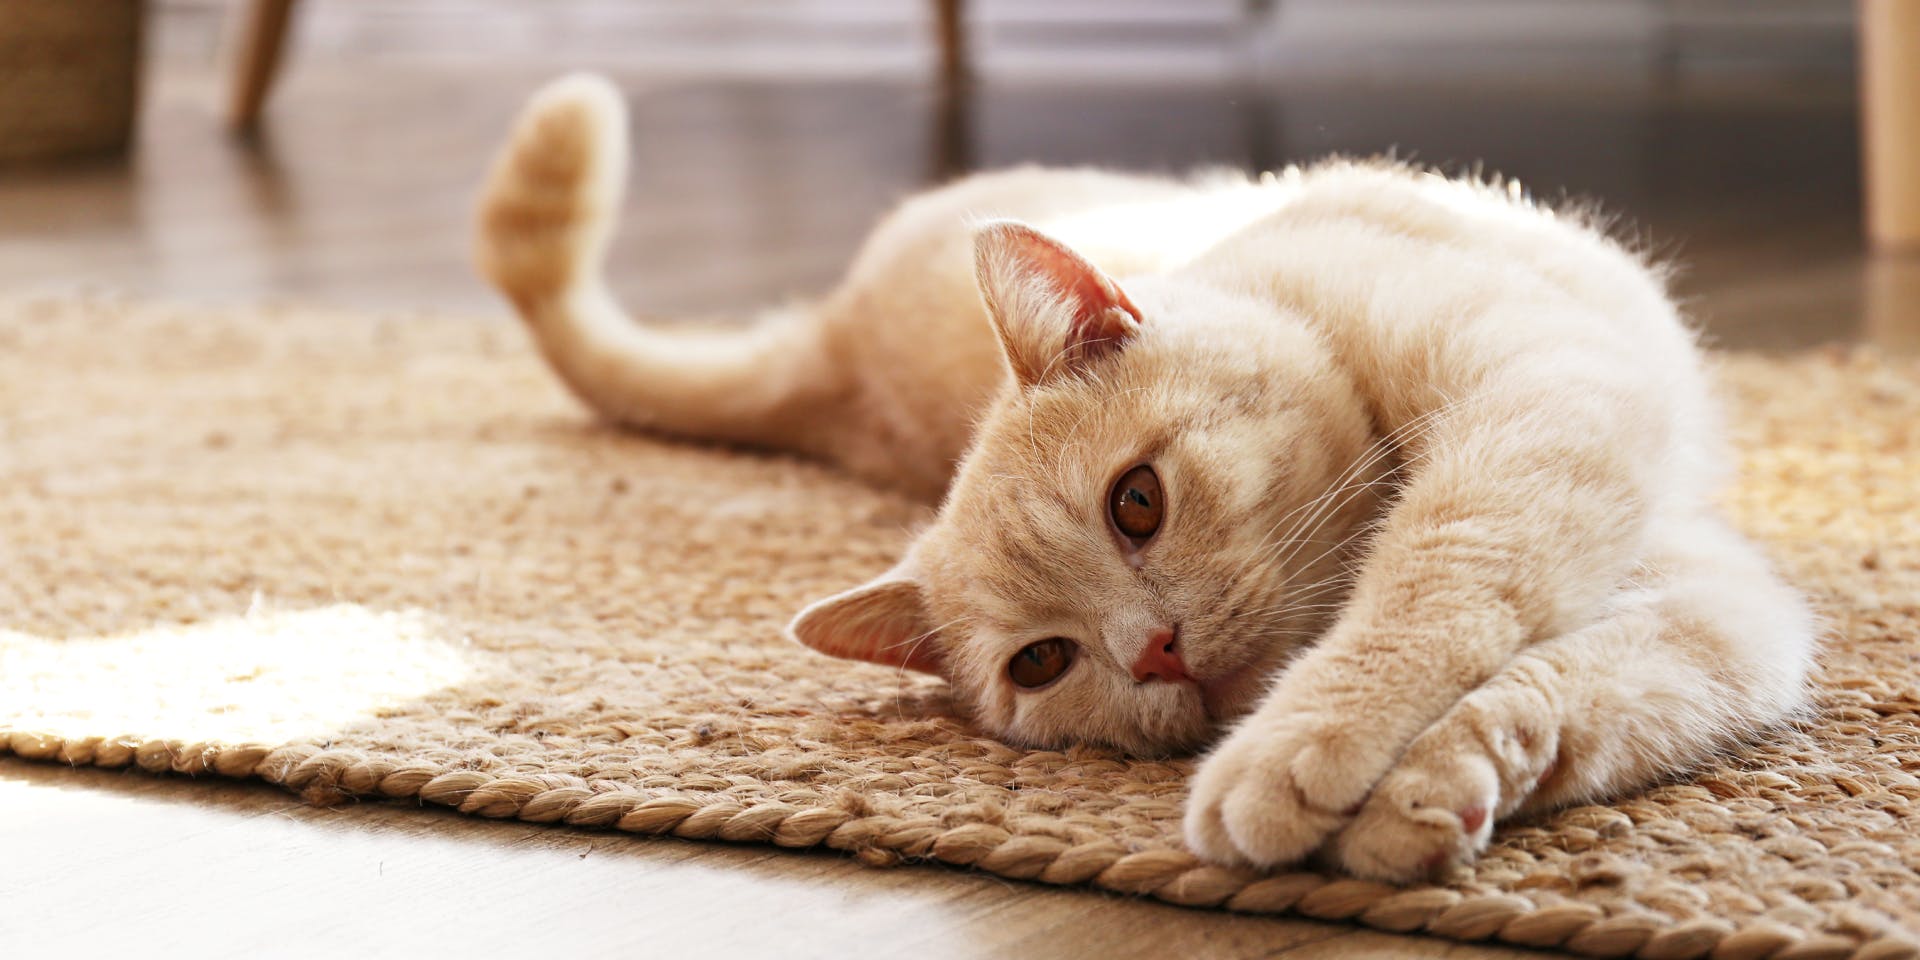 Ginger/ golden tabby cat lying on a carpet